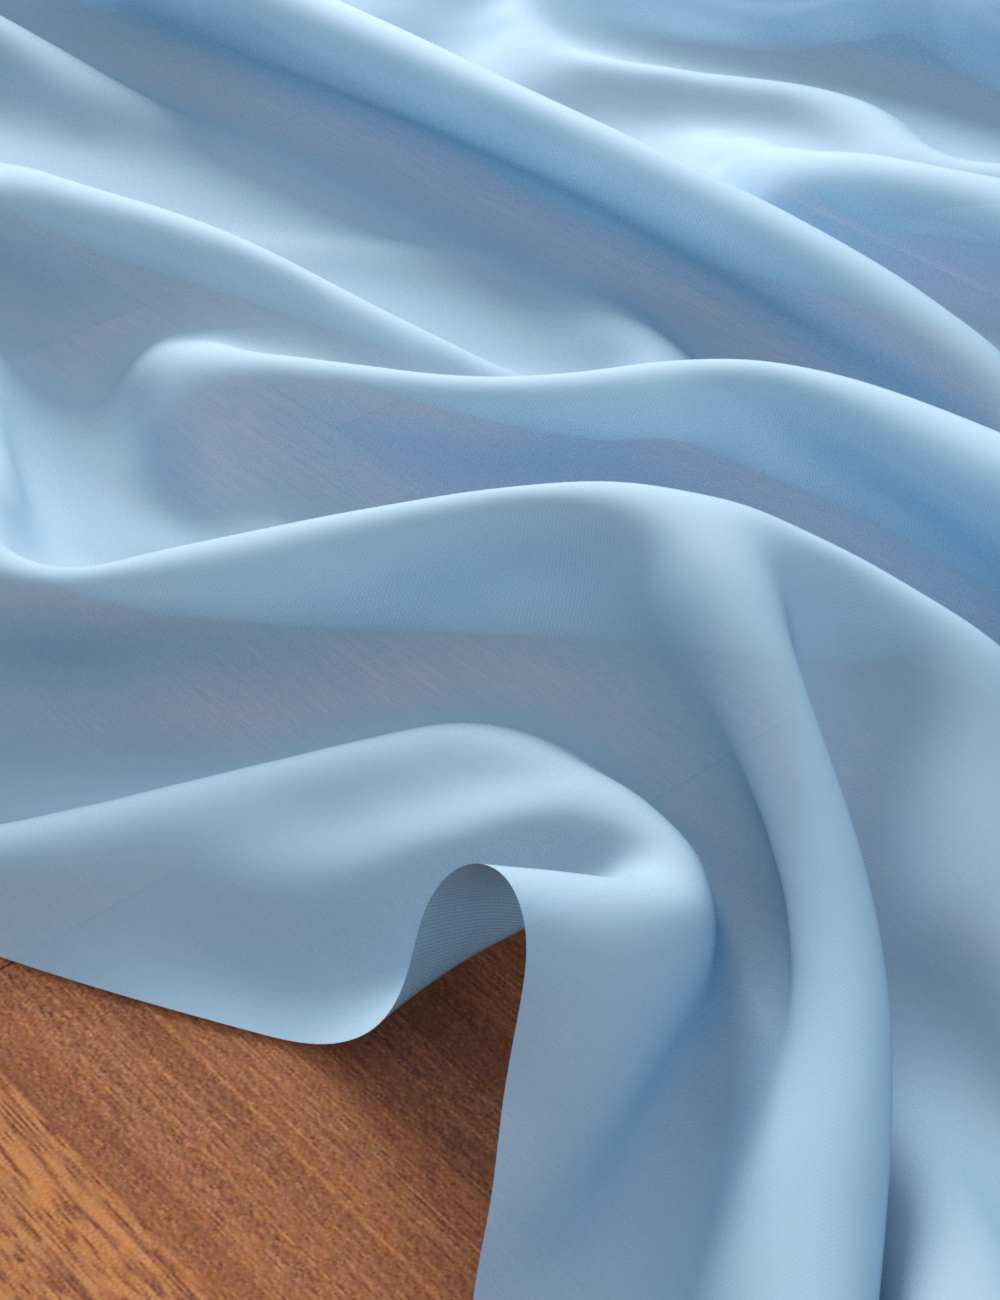 translucent fabric insulating